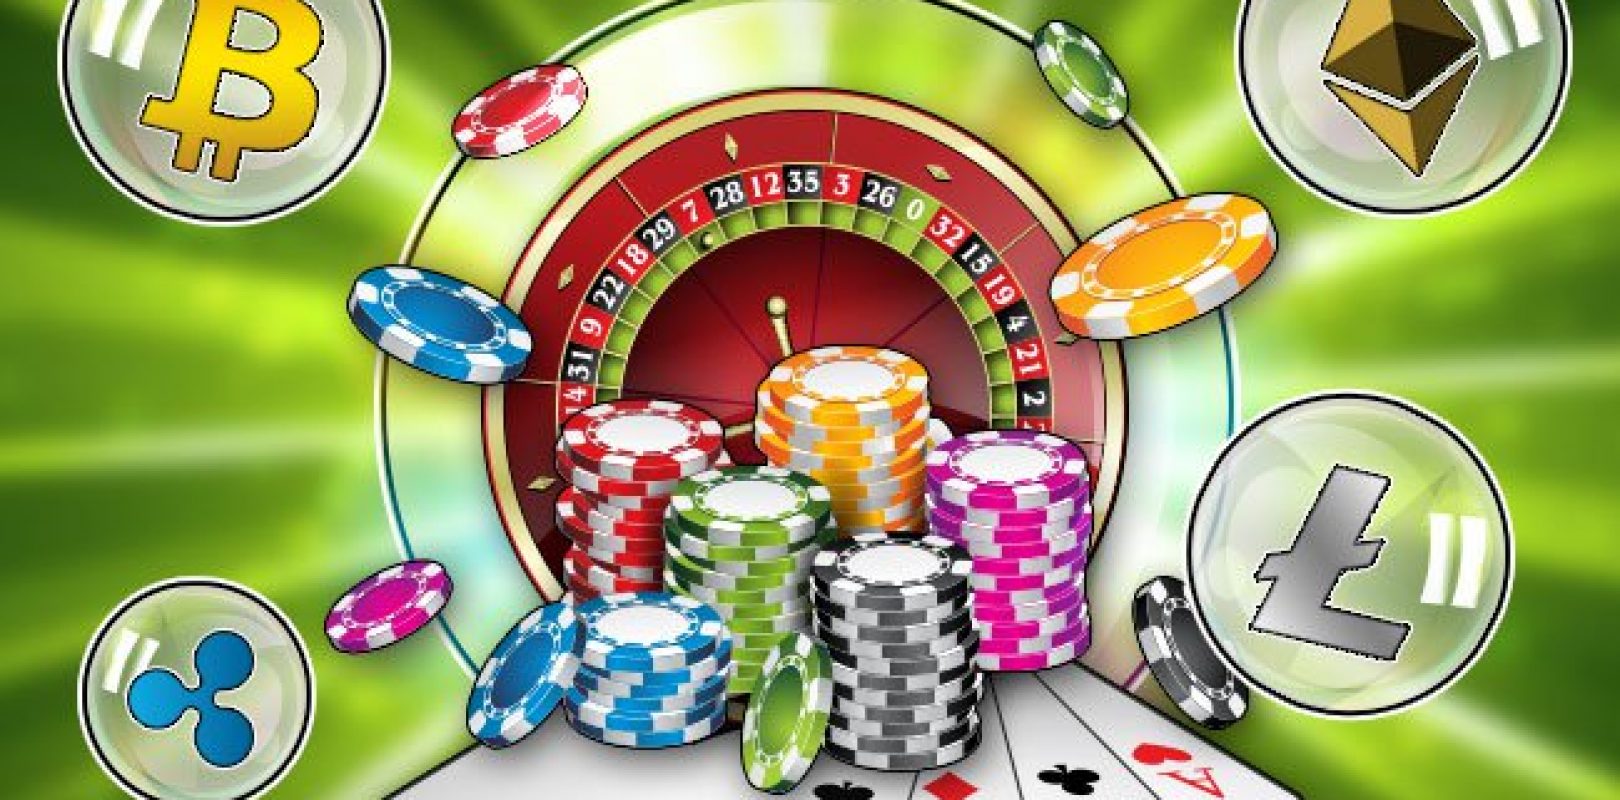 Wild casino free spins no deposit